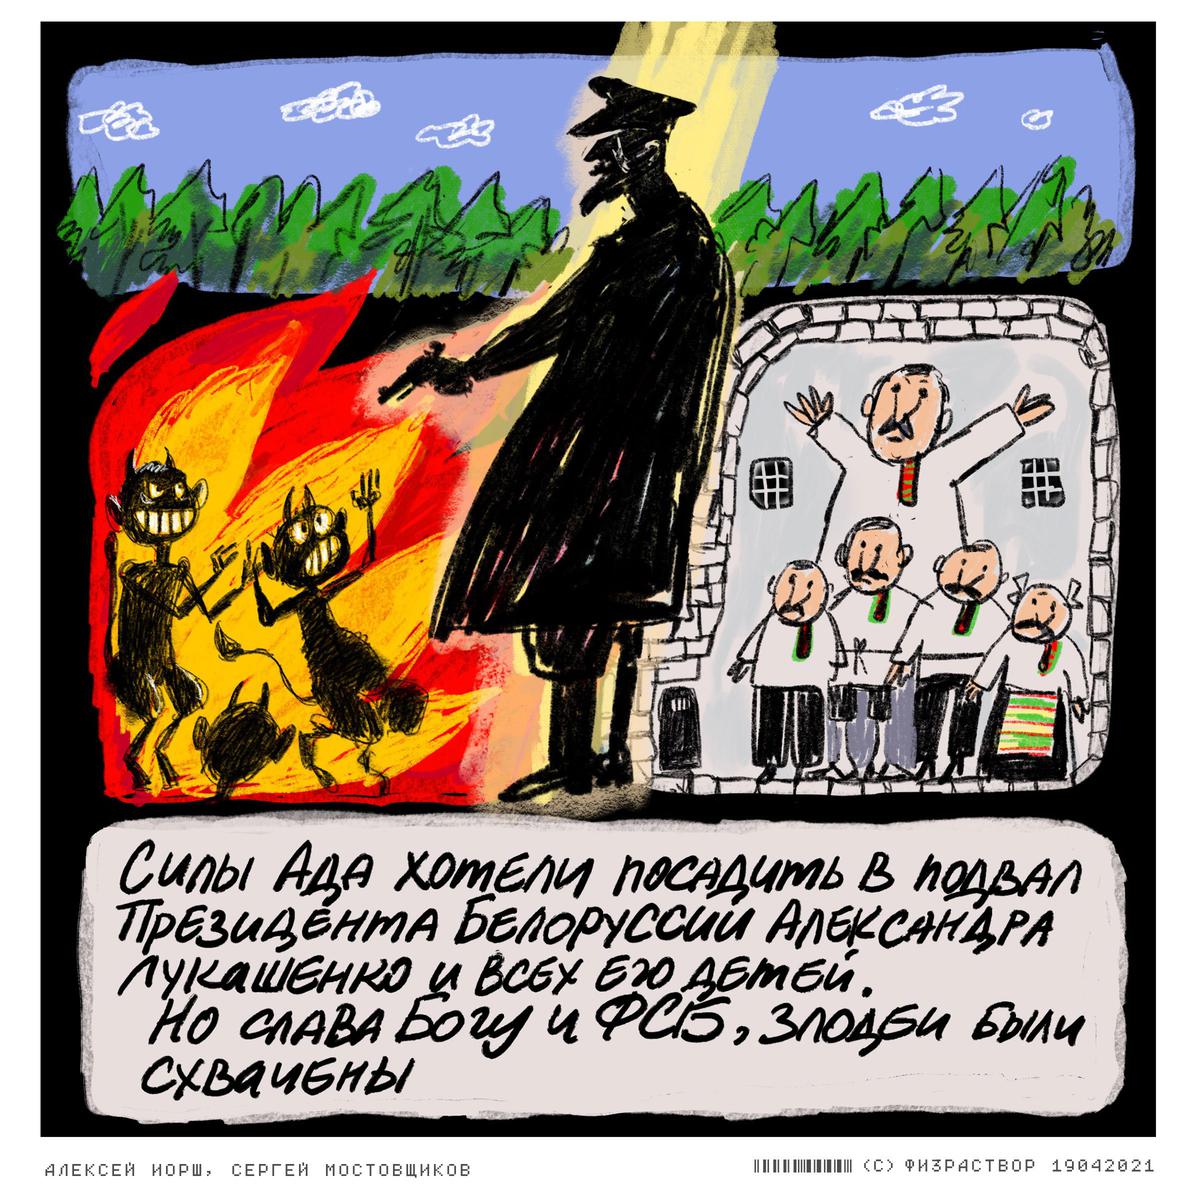 **Русско-белорусское ретабло в знак благодарности за предотвращение военного переворота, пленения Лукашенко, его детей, всего святого, крушения мира, конца света и других неприятностей**